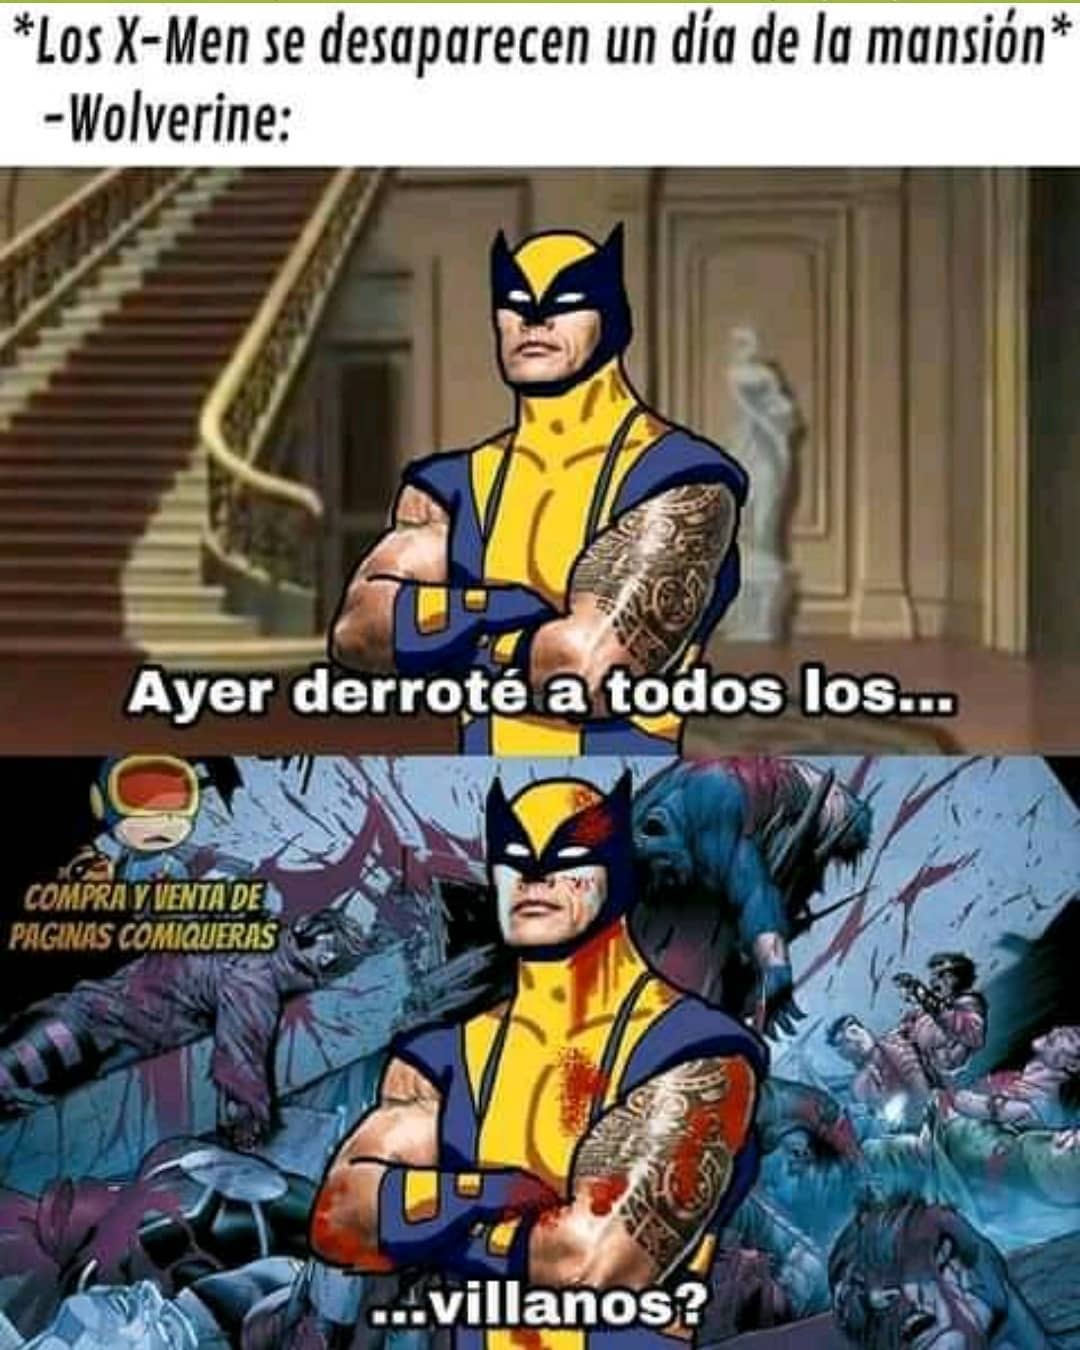 *Los X-Men se desaparecen un día de la mansión*  Wolverine: Ayer derroté a todos los... villanos?